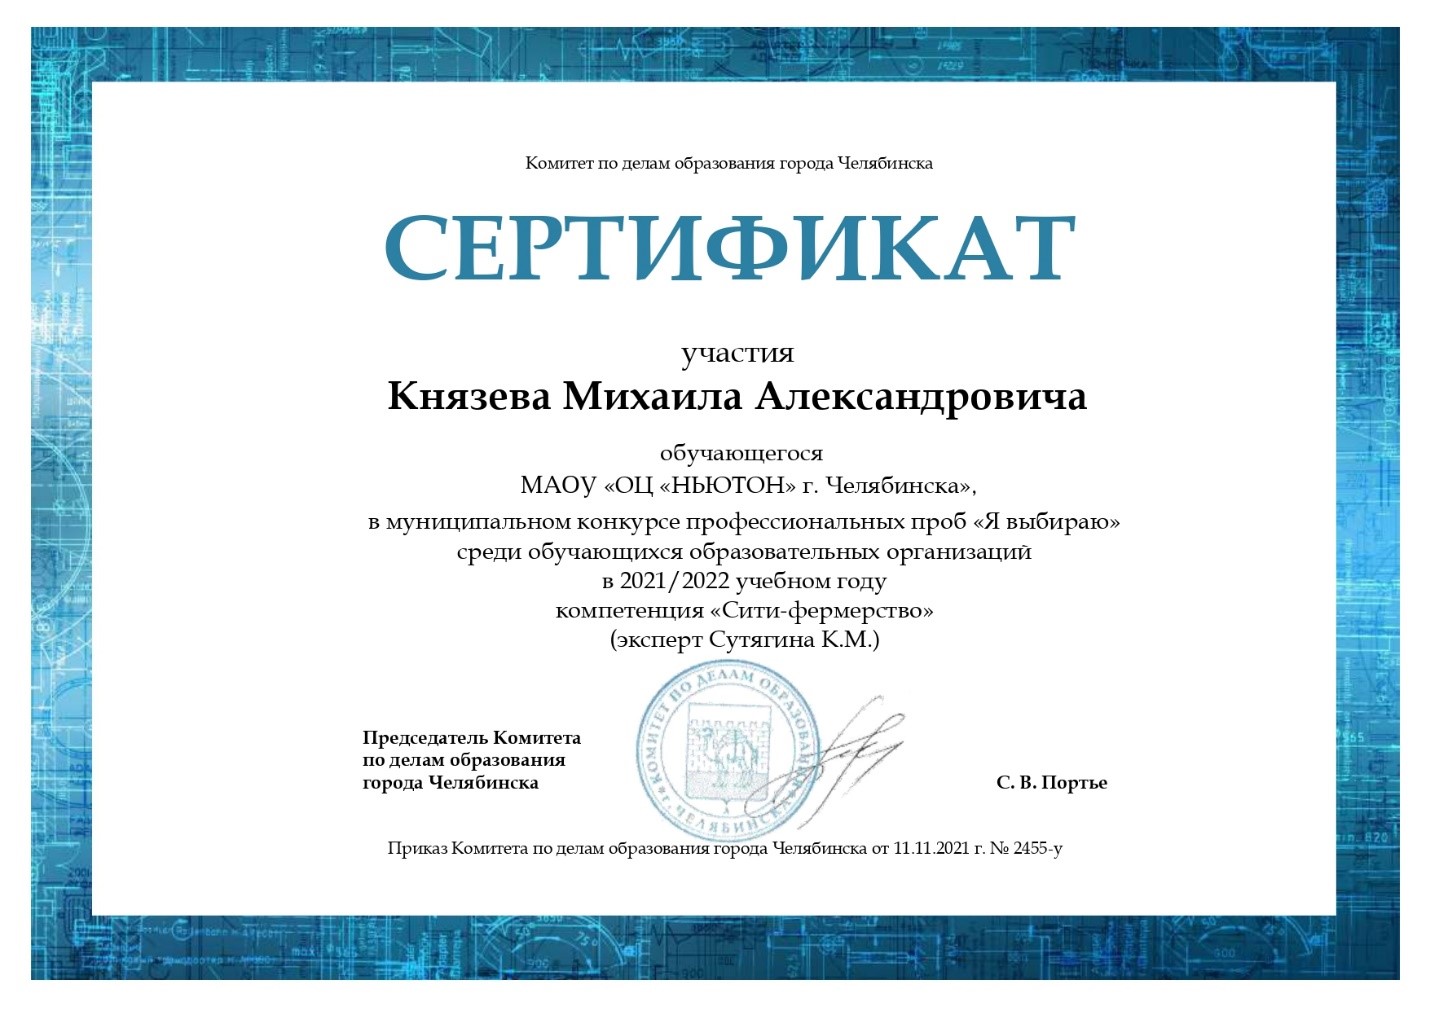 Сертификат Князева